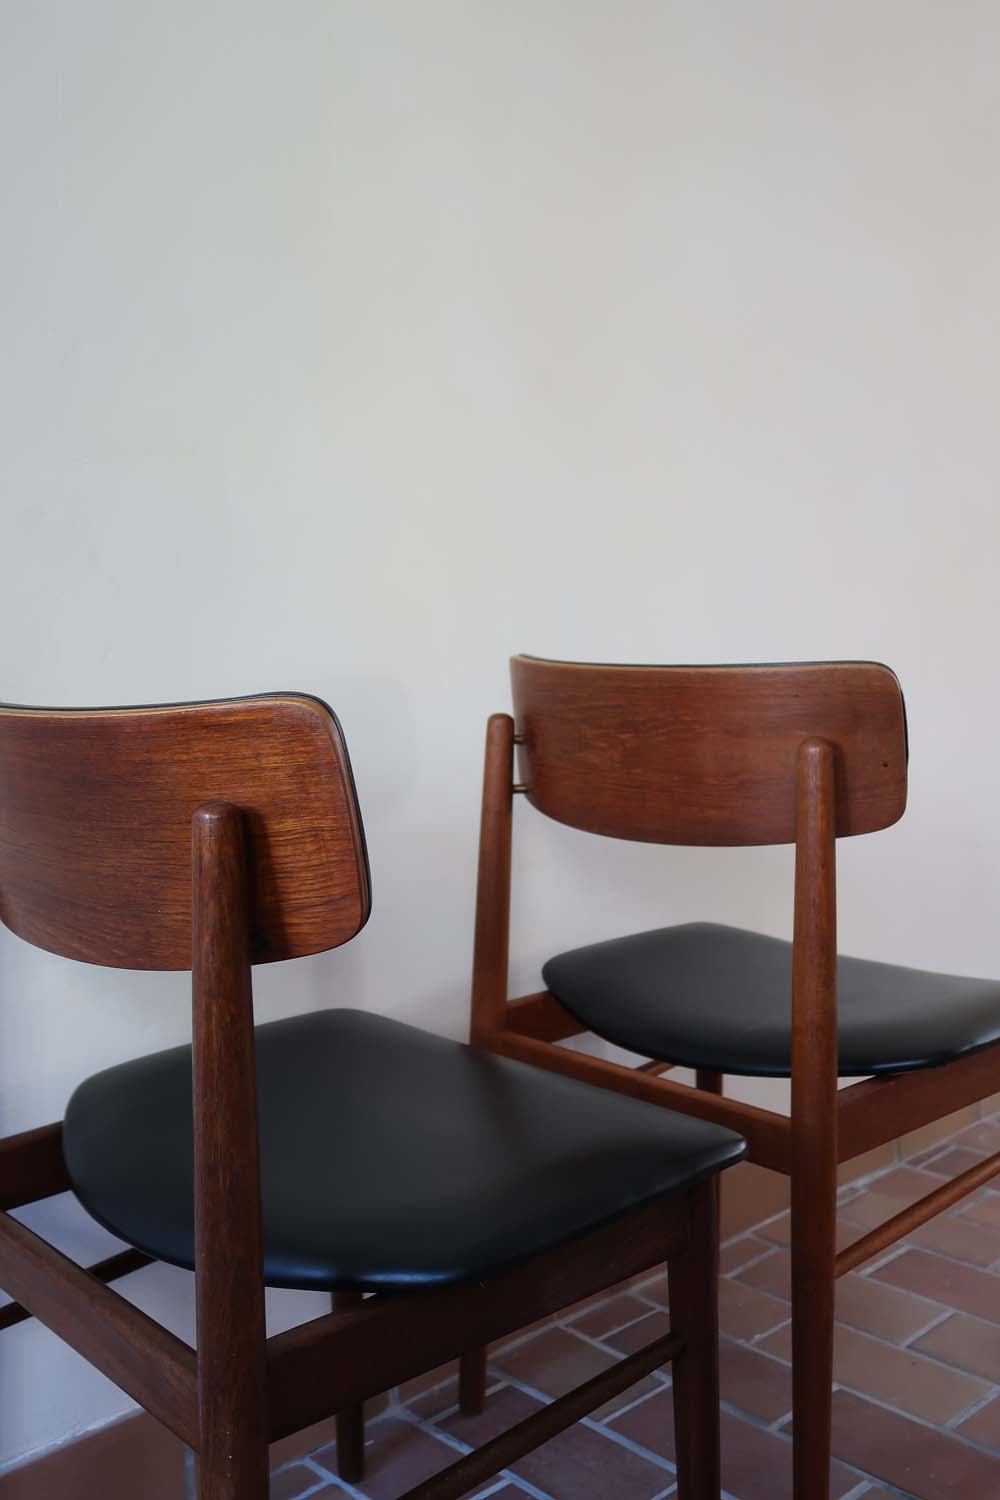 paire 2 chaises scandinave skaï noir vintage teck made in denmark Sax S Chrobat années 60